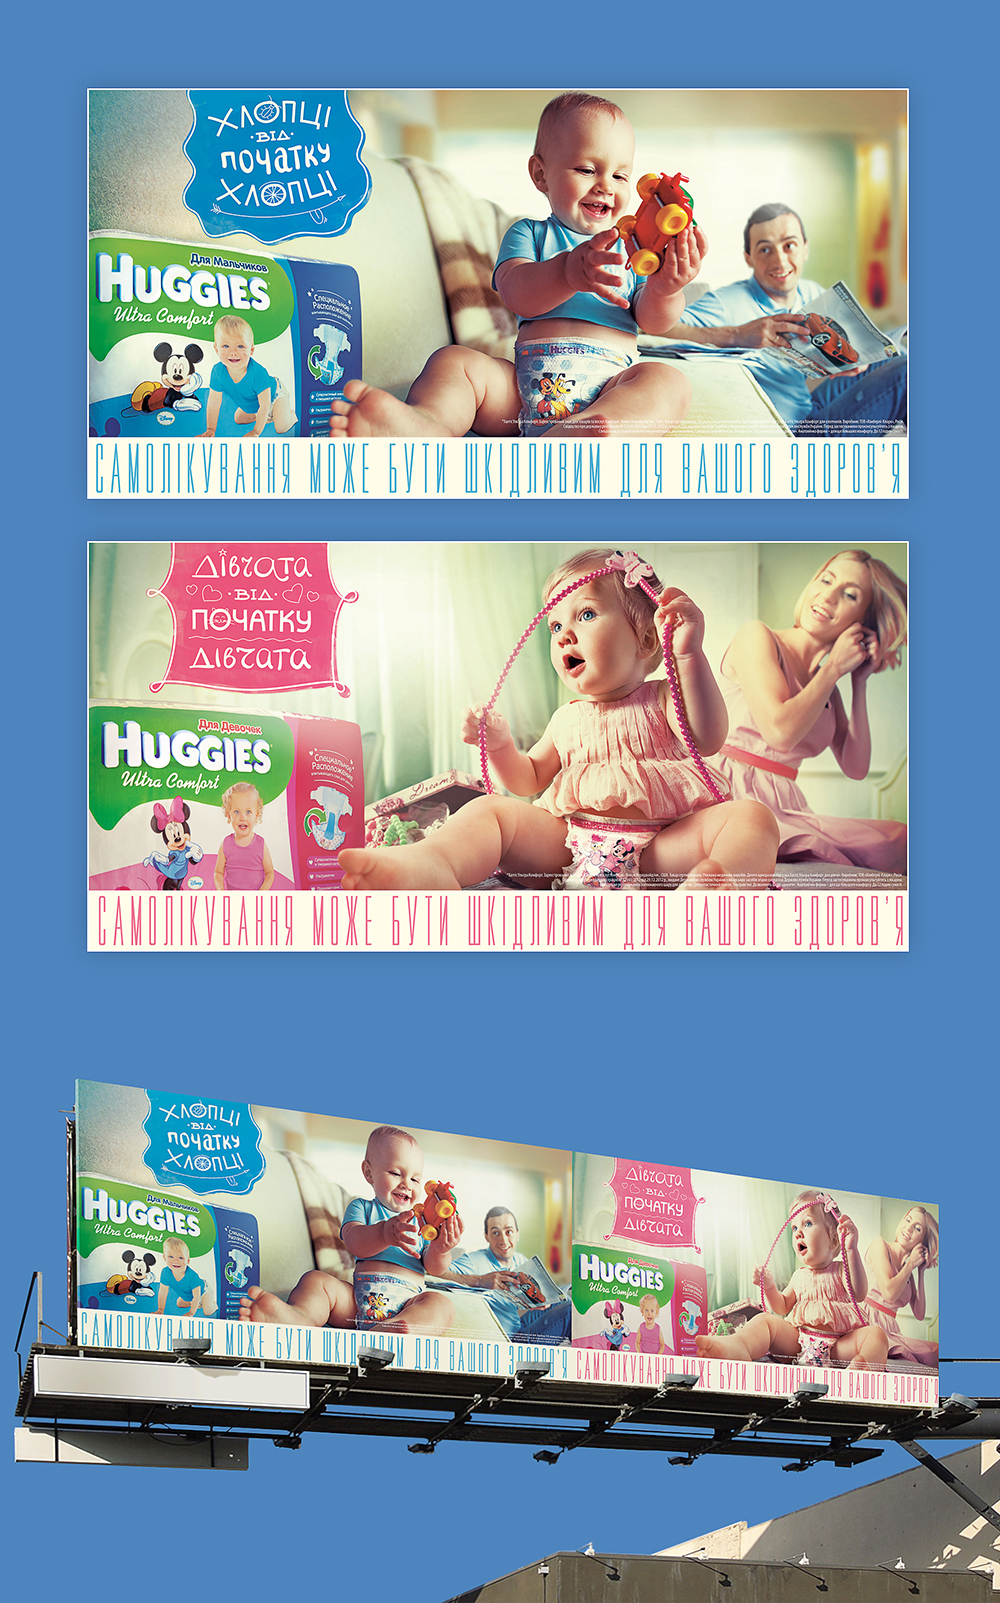 В 2013 году в 11 странах Восточной Европы стартовала рекламная кампания Huggies, разработанная и реализованная украинским агентством Bart&Fink.